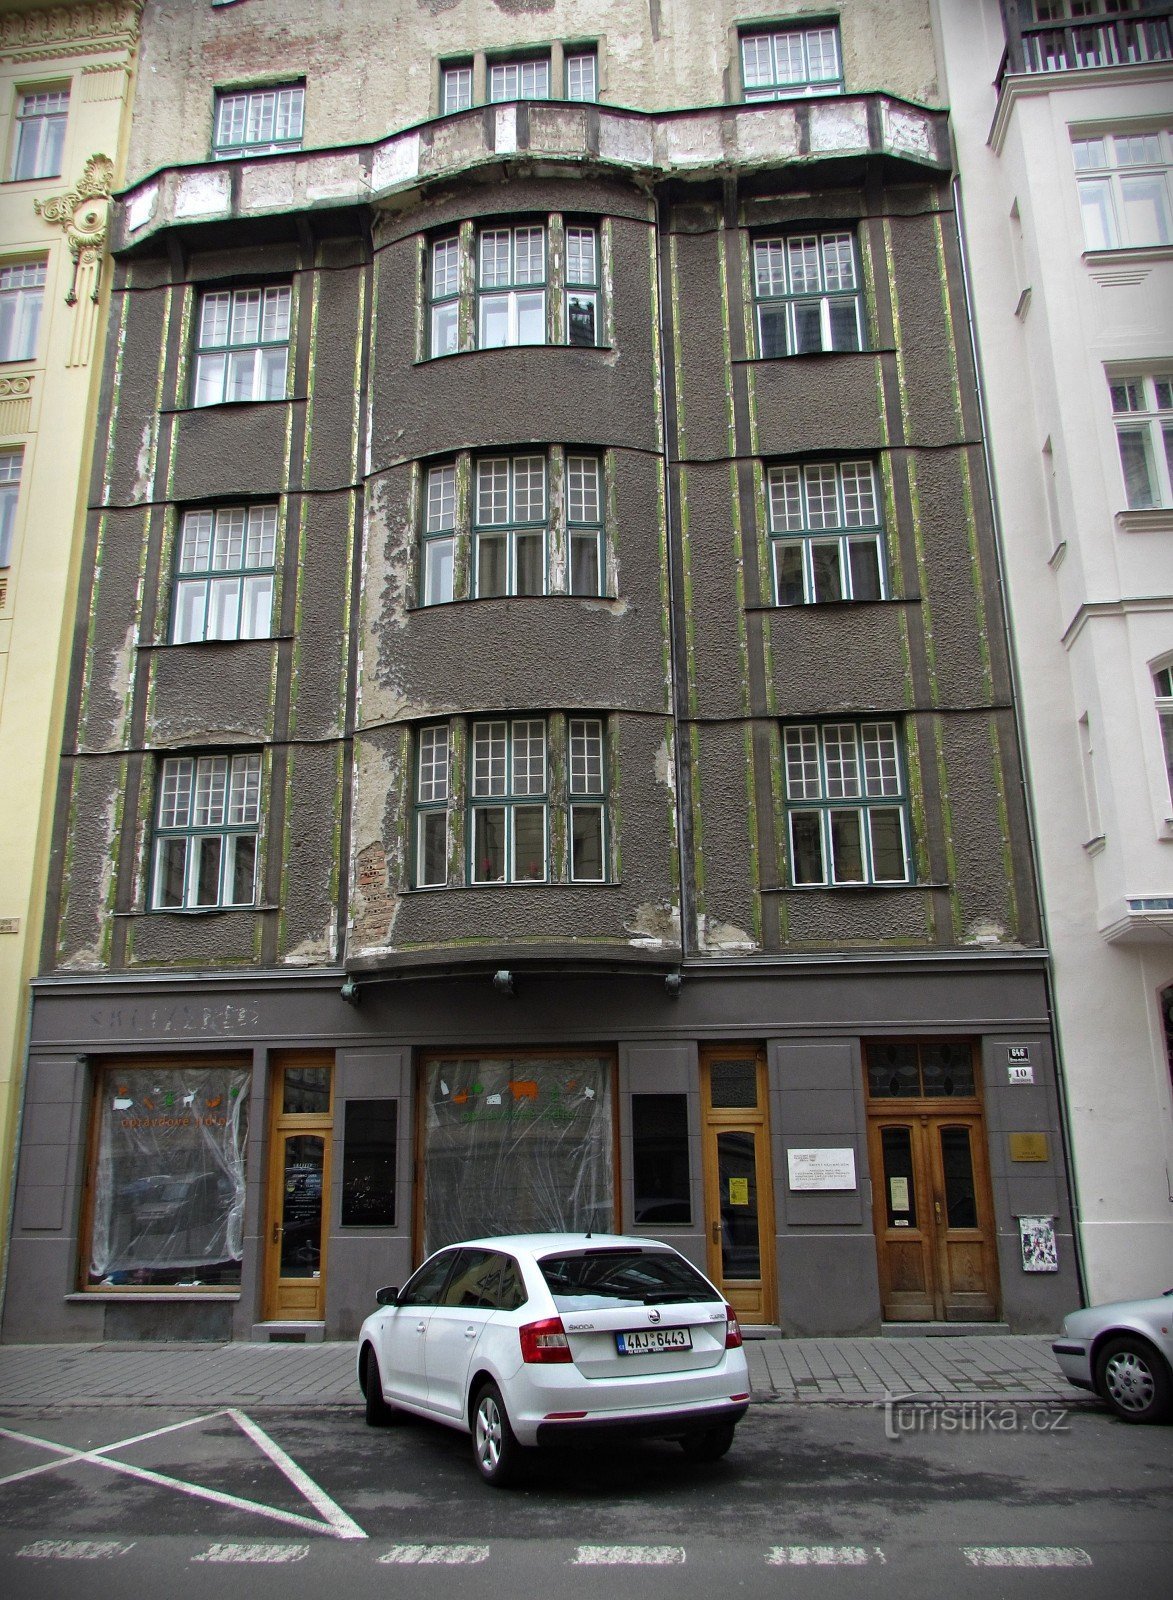 ブルノ - ユルコビッチの家